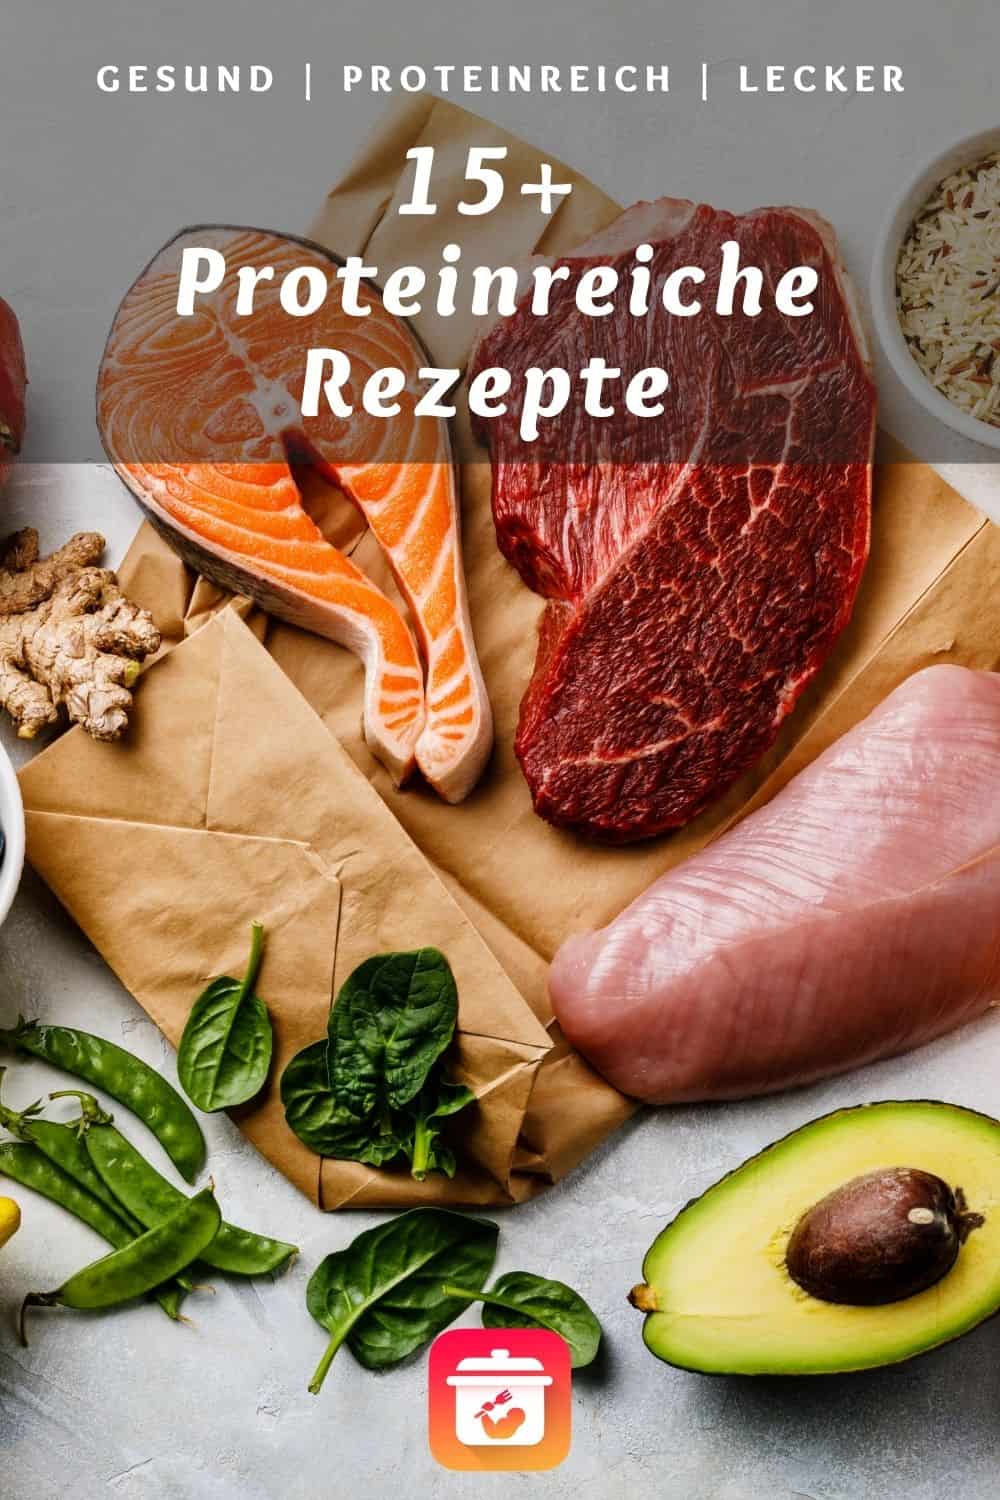 Proteinreiche Rezepte - 15+ einfache  High-Protein Gerichte